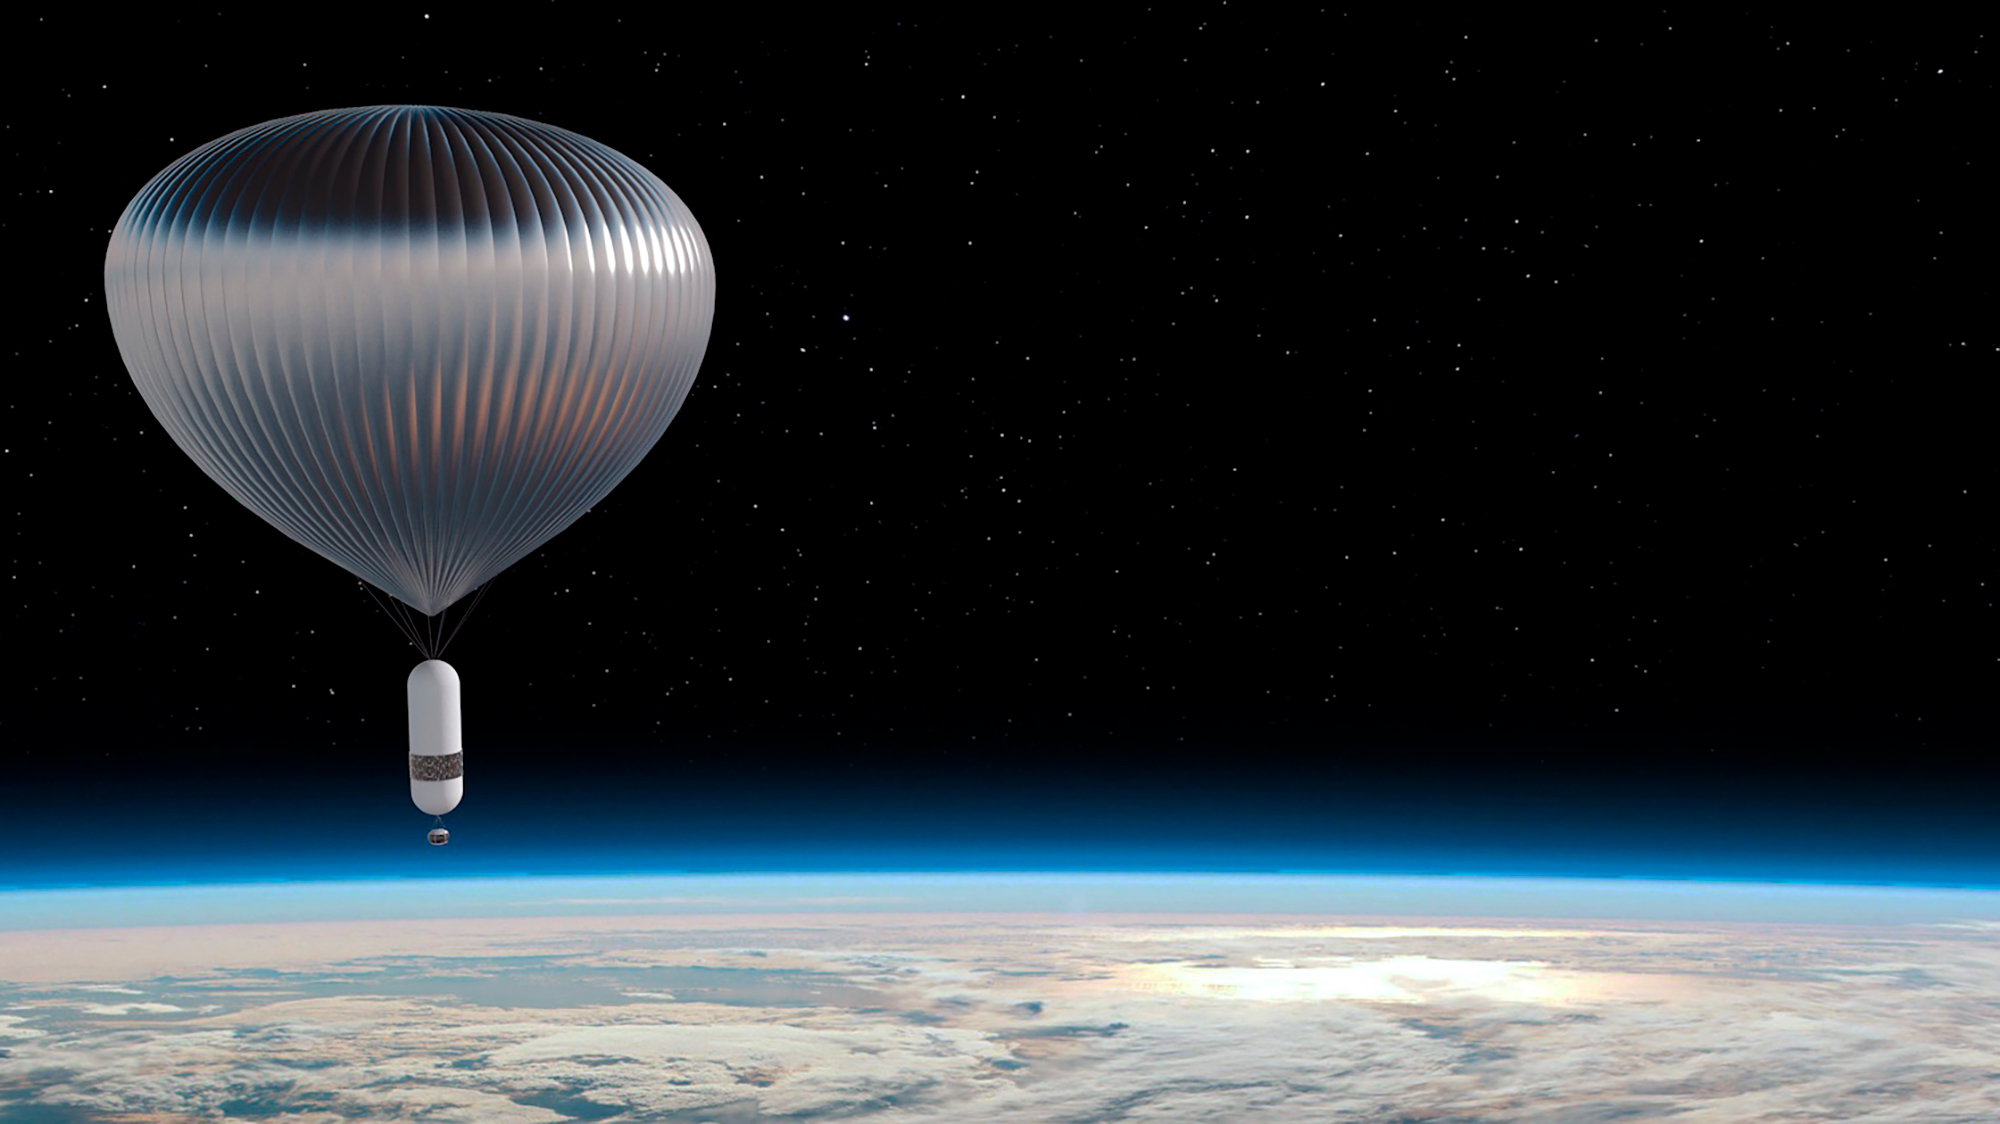 Le ballon stratosphérique de Zephalto. Haut de 130 mètres, il sera utilisé pour des vols habités à 25 kilomètres d'altitude et le transport d'expériences ou de charges utiles pour des applications scientifiques et industrielles. © Zephalto